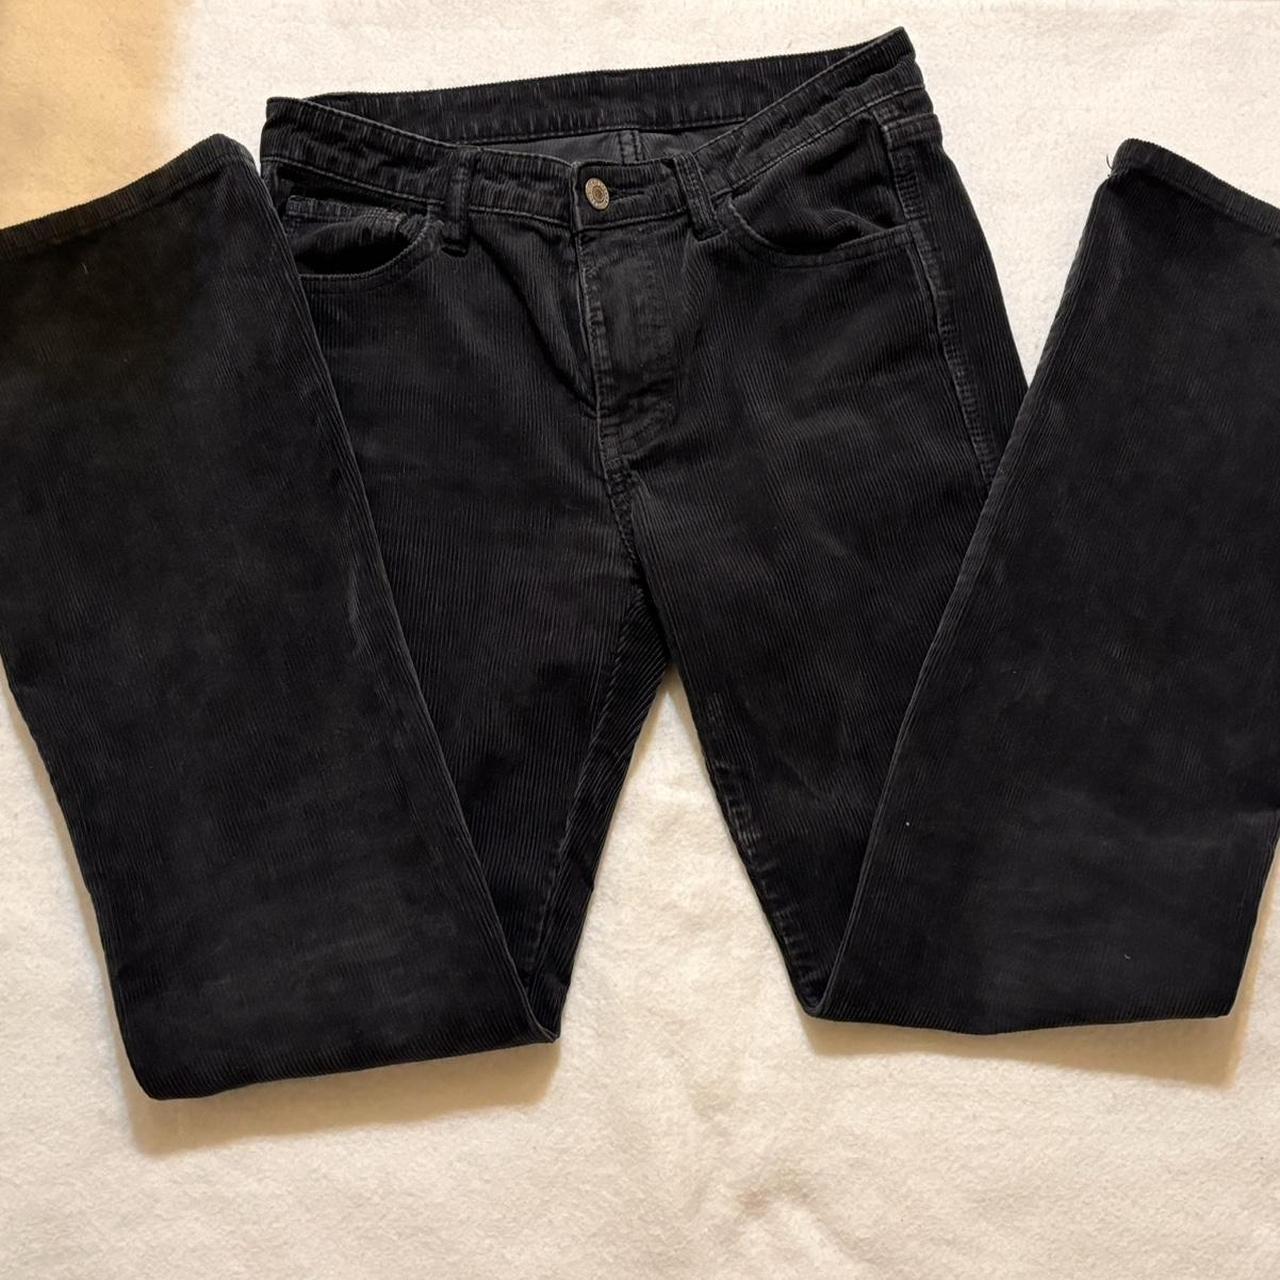 Jbrand corduroy skinny jeans. Solid black color. Mid - Depop